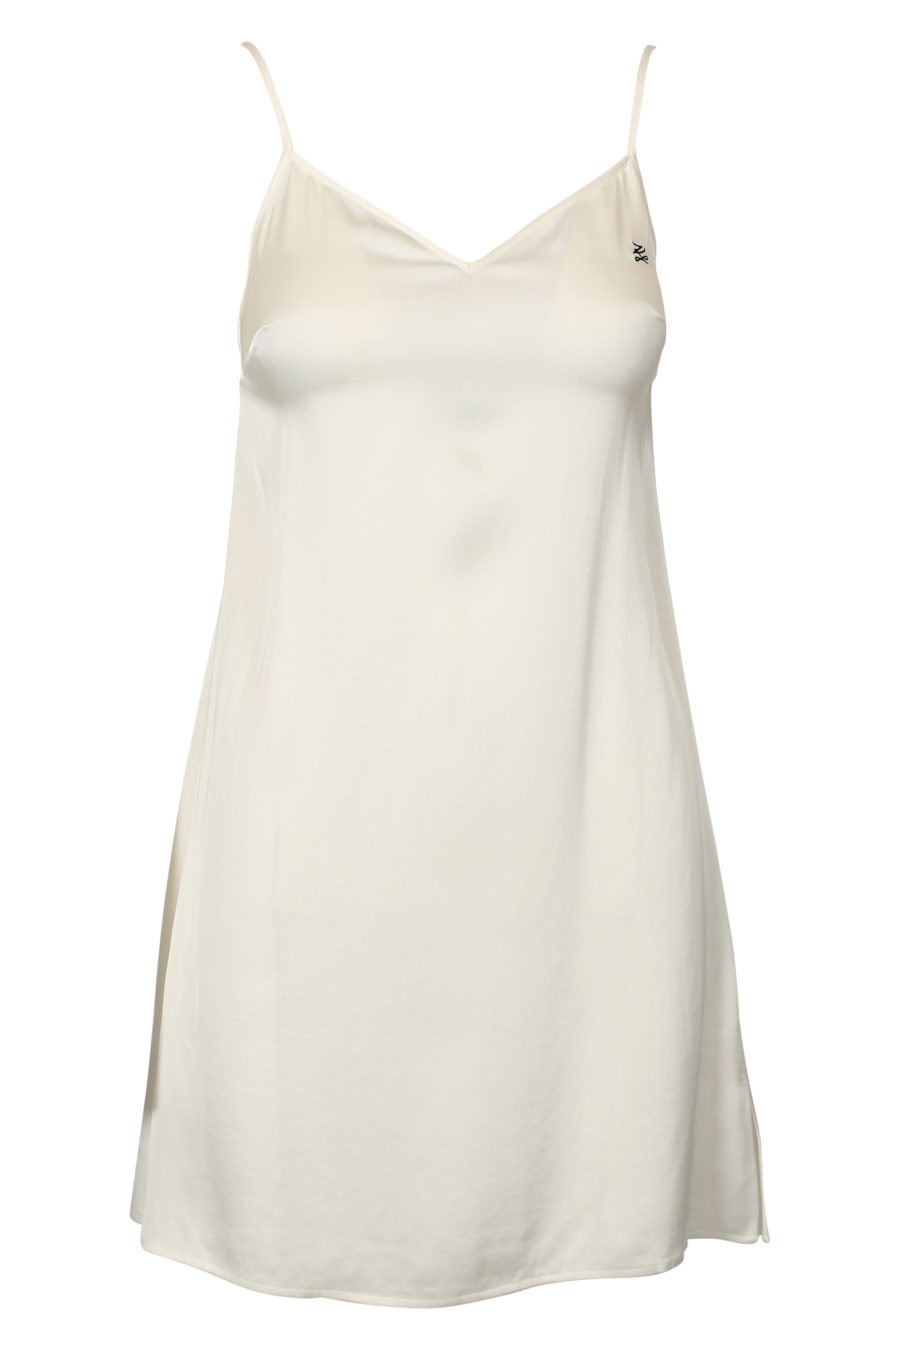 Vestido de cetim branco - IMG 3027